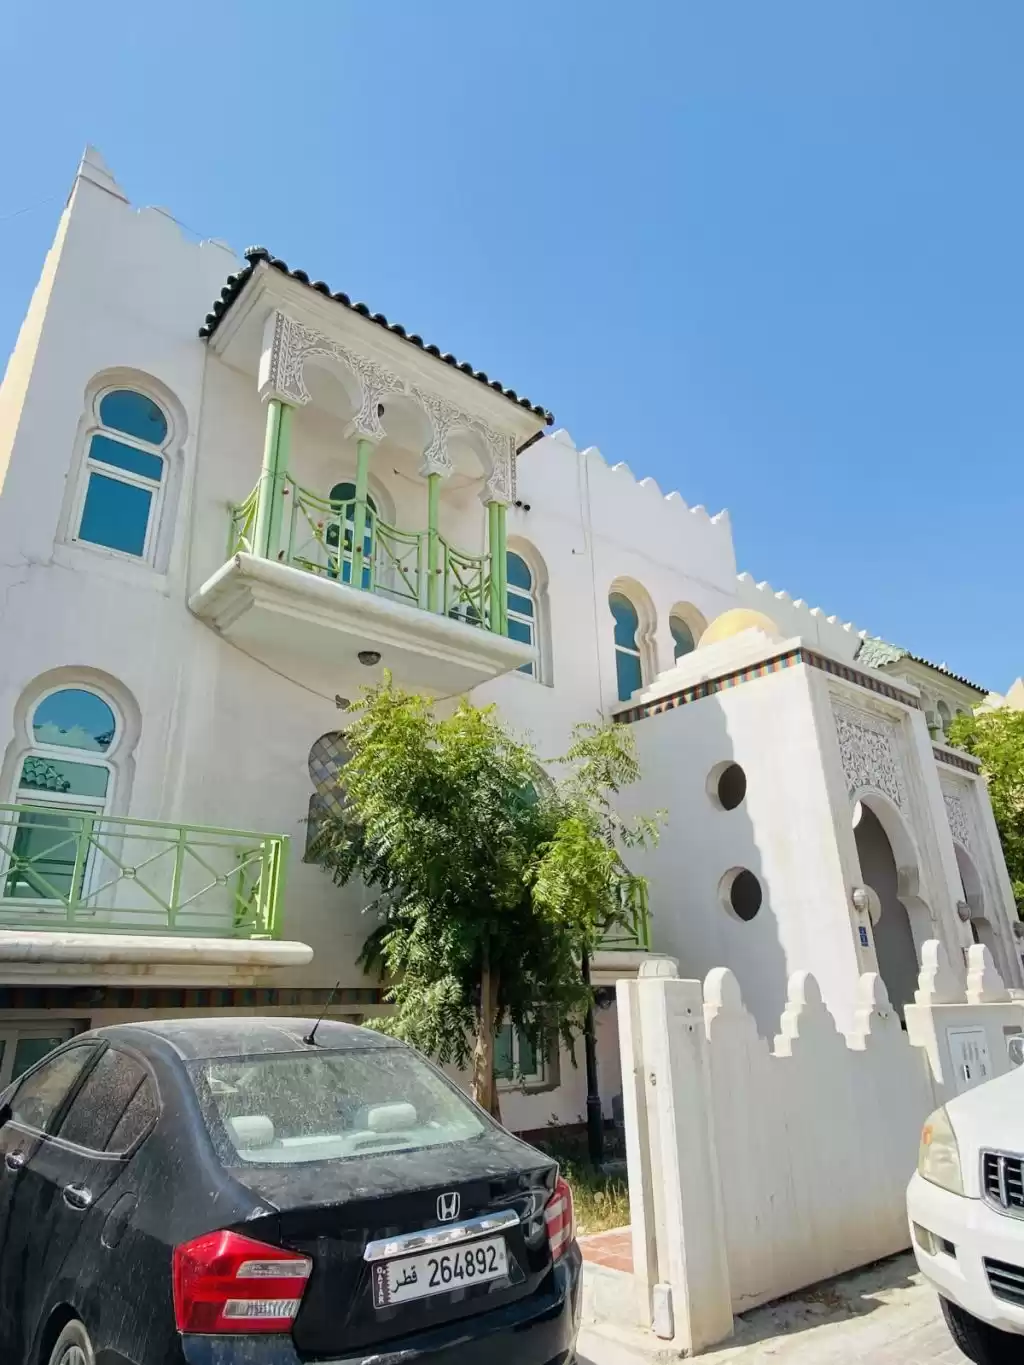 Résidentiel Propriété prête 2 chambres U / f Appartement  a louer au Al-Sadd , Doha #16589 - 1  image 